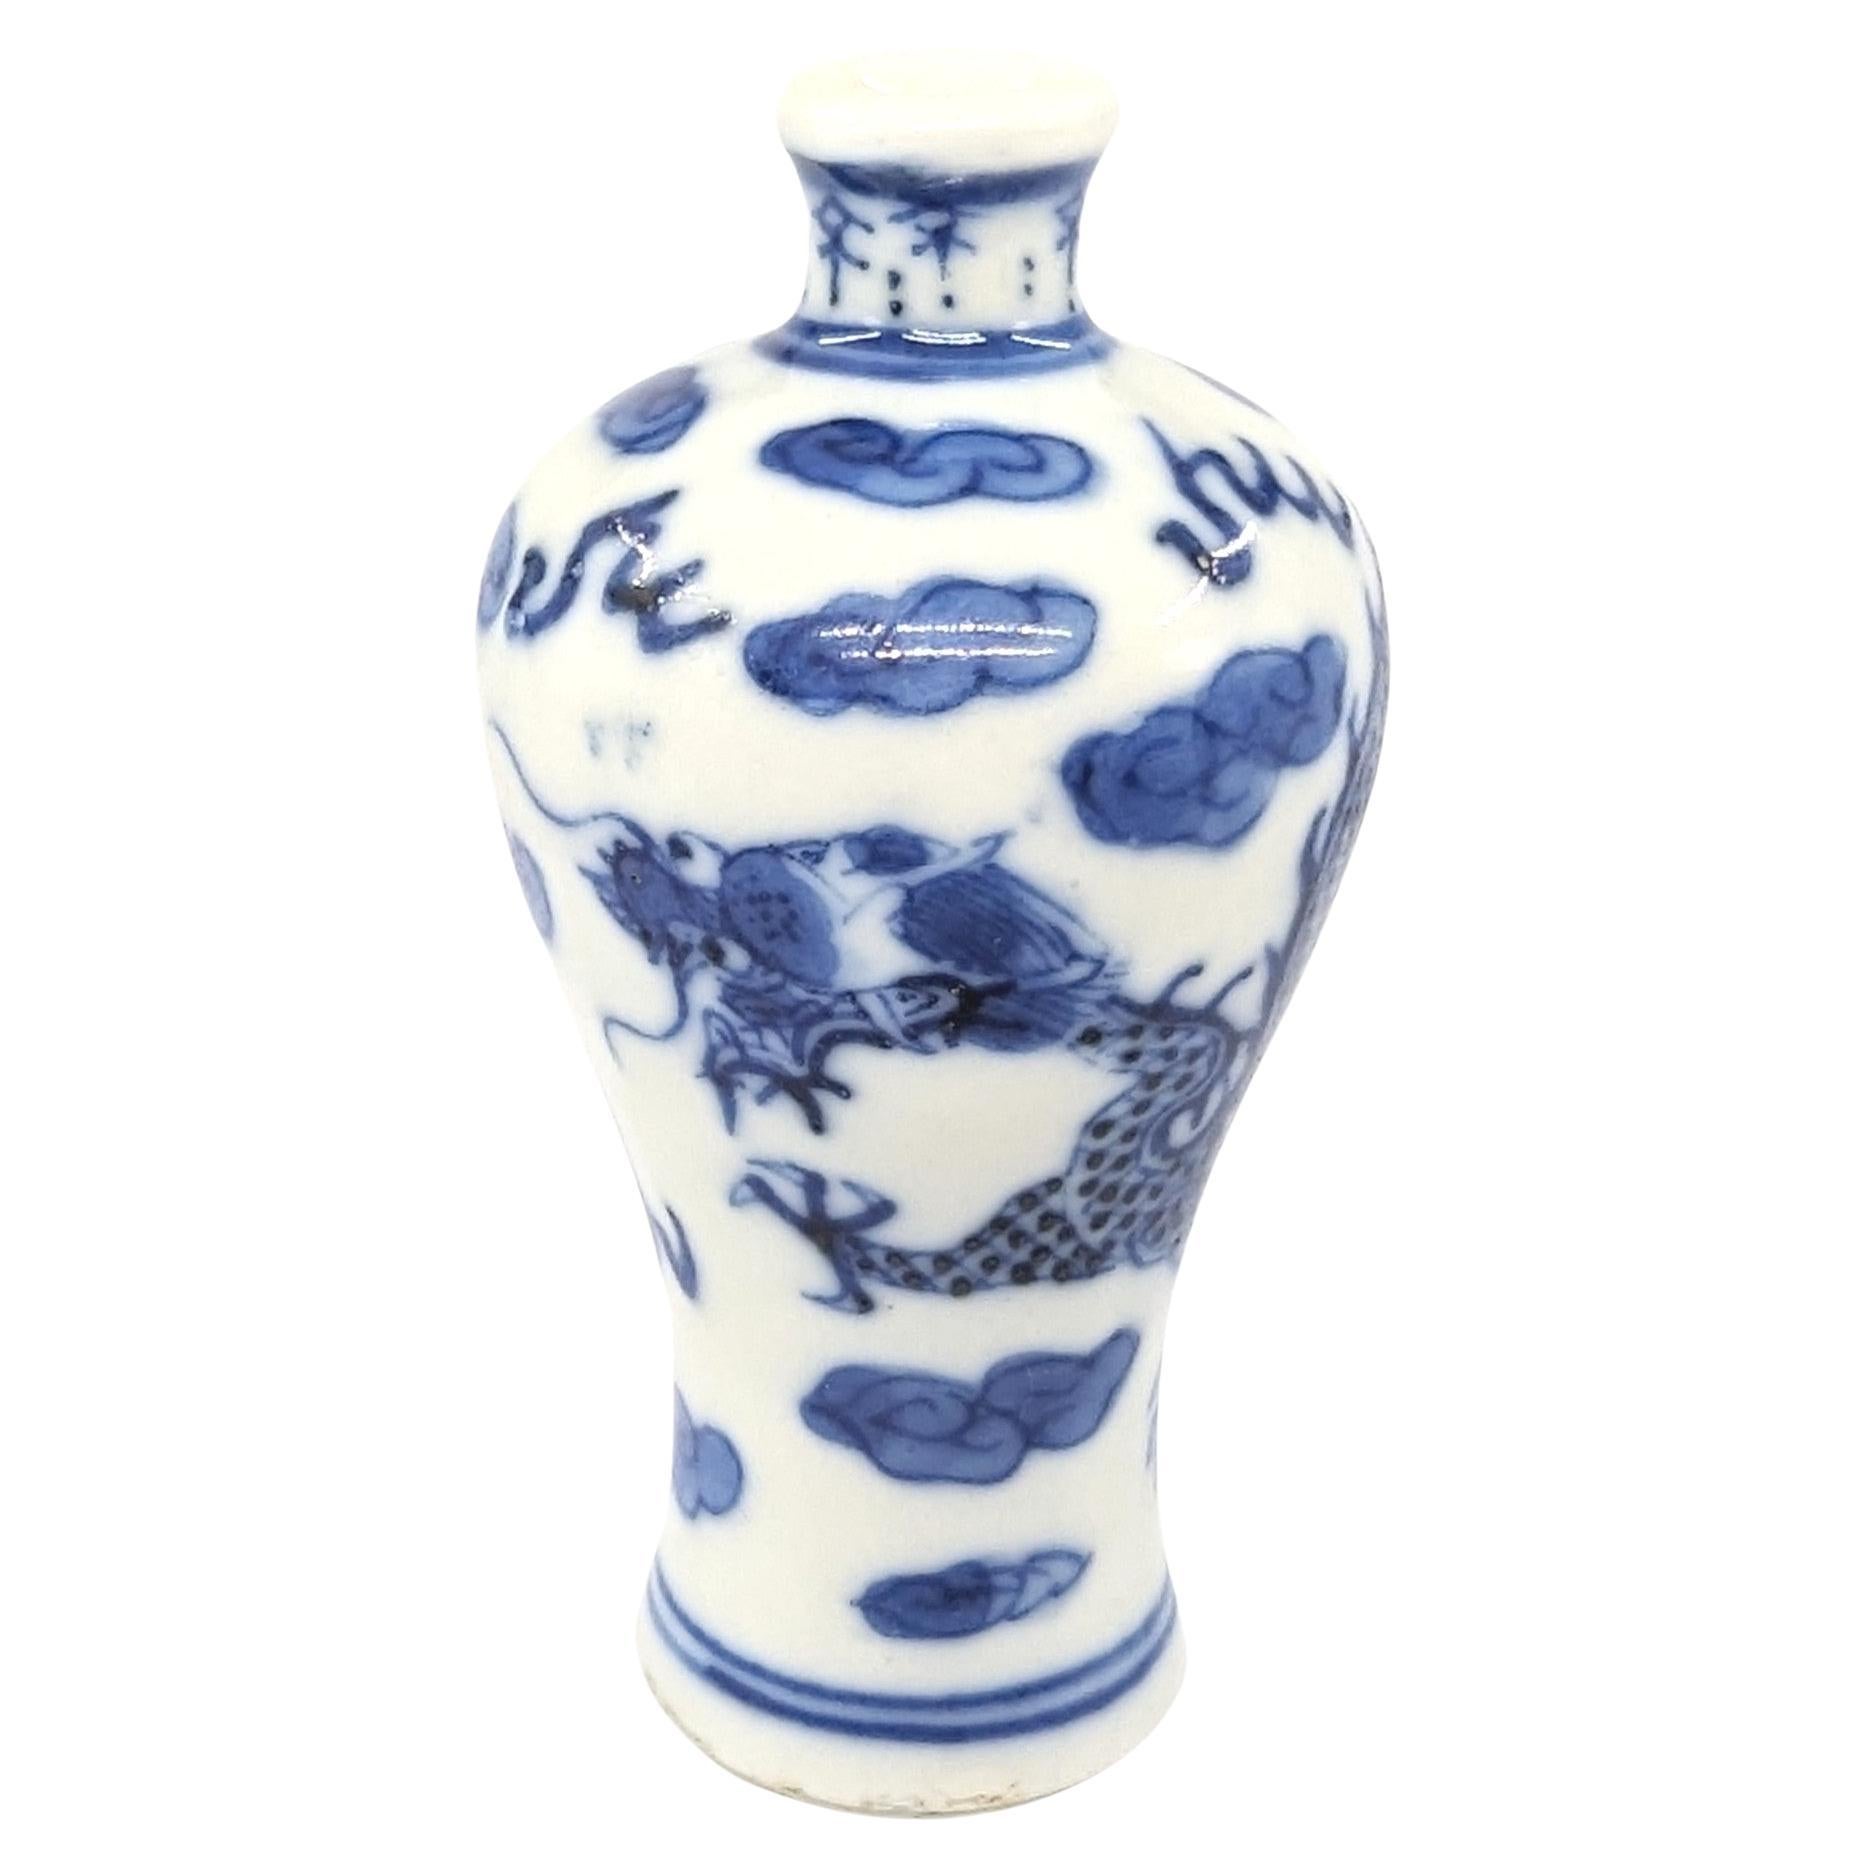 Antike Schnupftabakflasche aus chinesischem Porzellan in Meiping-Form, bemalt in Unterglasurblau und Weiß mit einem lebhaften Drachen mit vier Klauen, der zwischen Wolken und Flammen eine Perle verfolgt

CIRCA 1800, spätes 18. bis frühes 19.